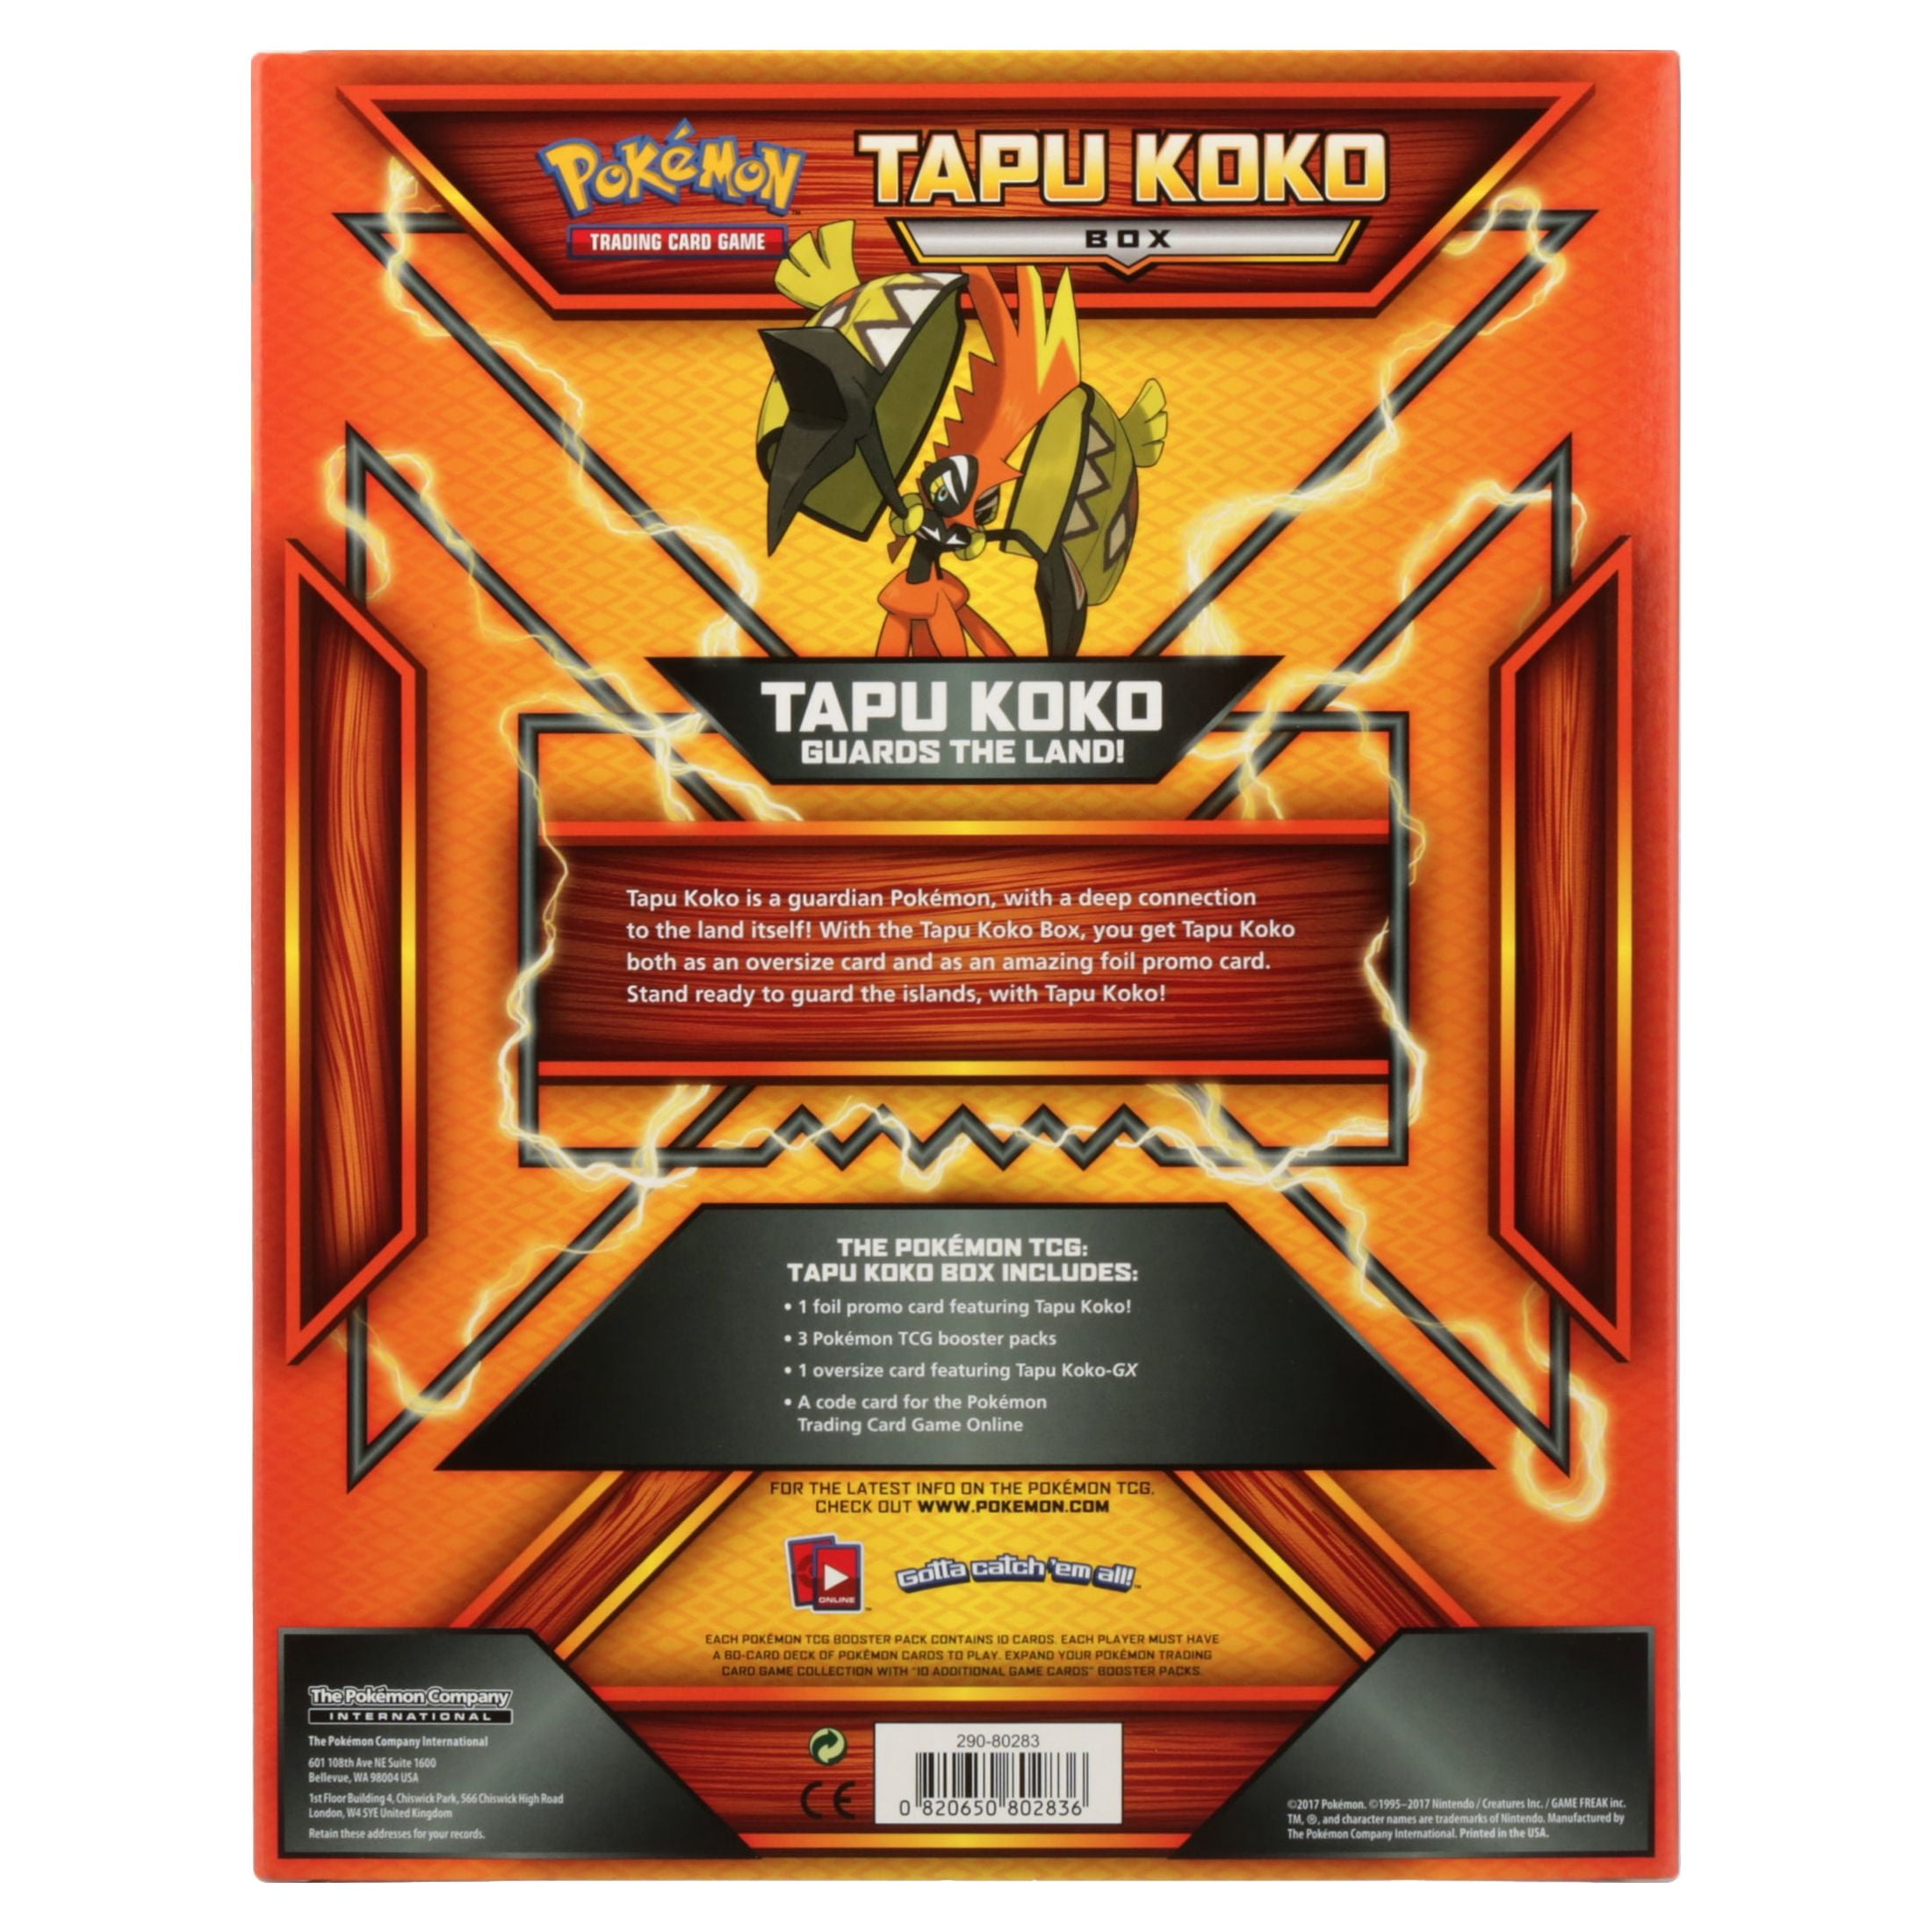 Pokémon POK80283 Tapu Koko Box — BlueProton